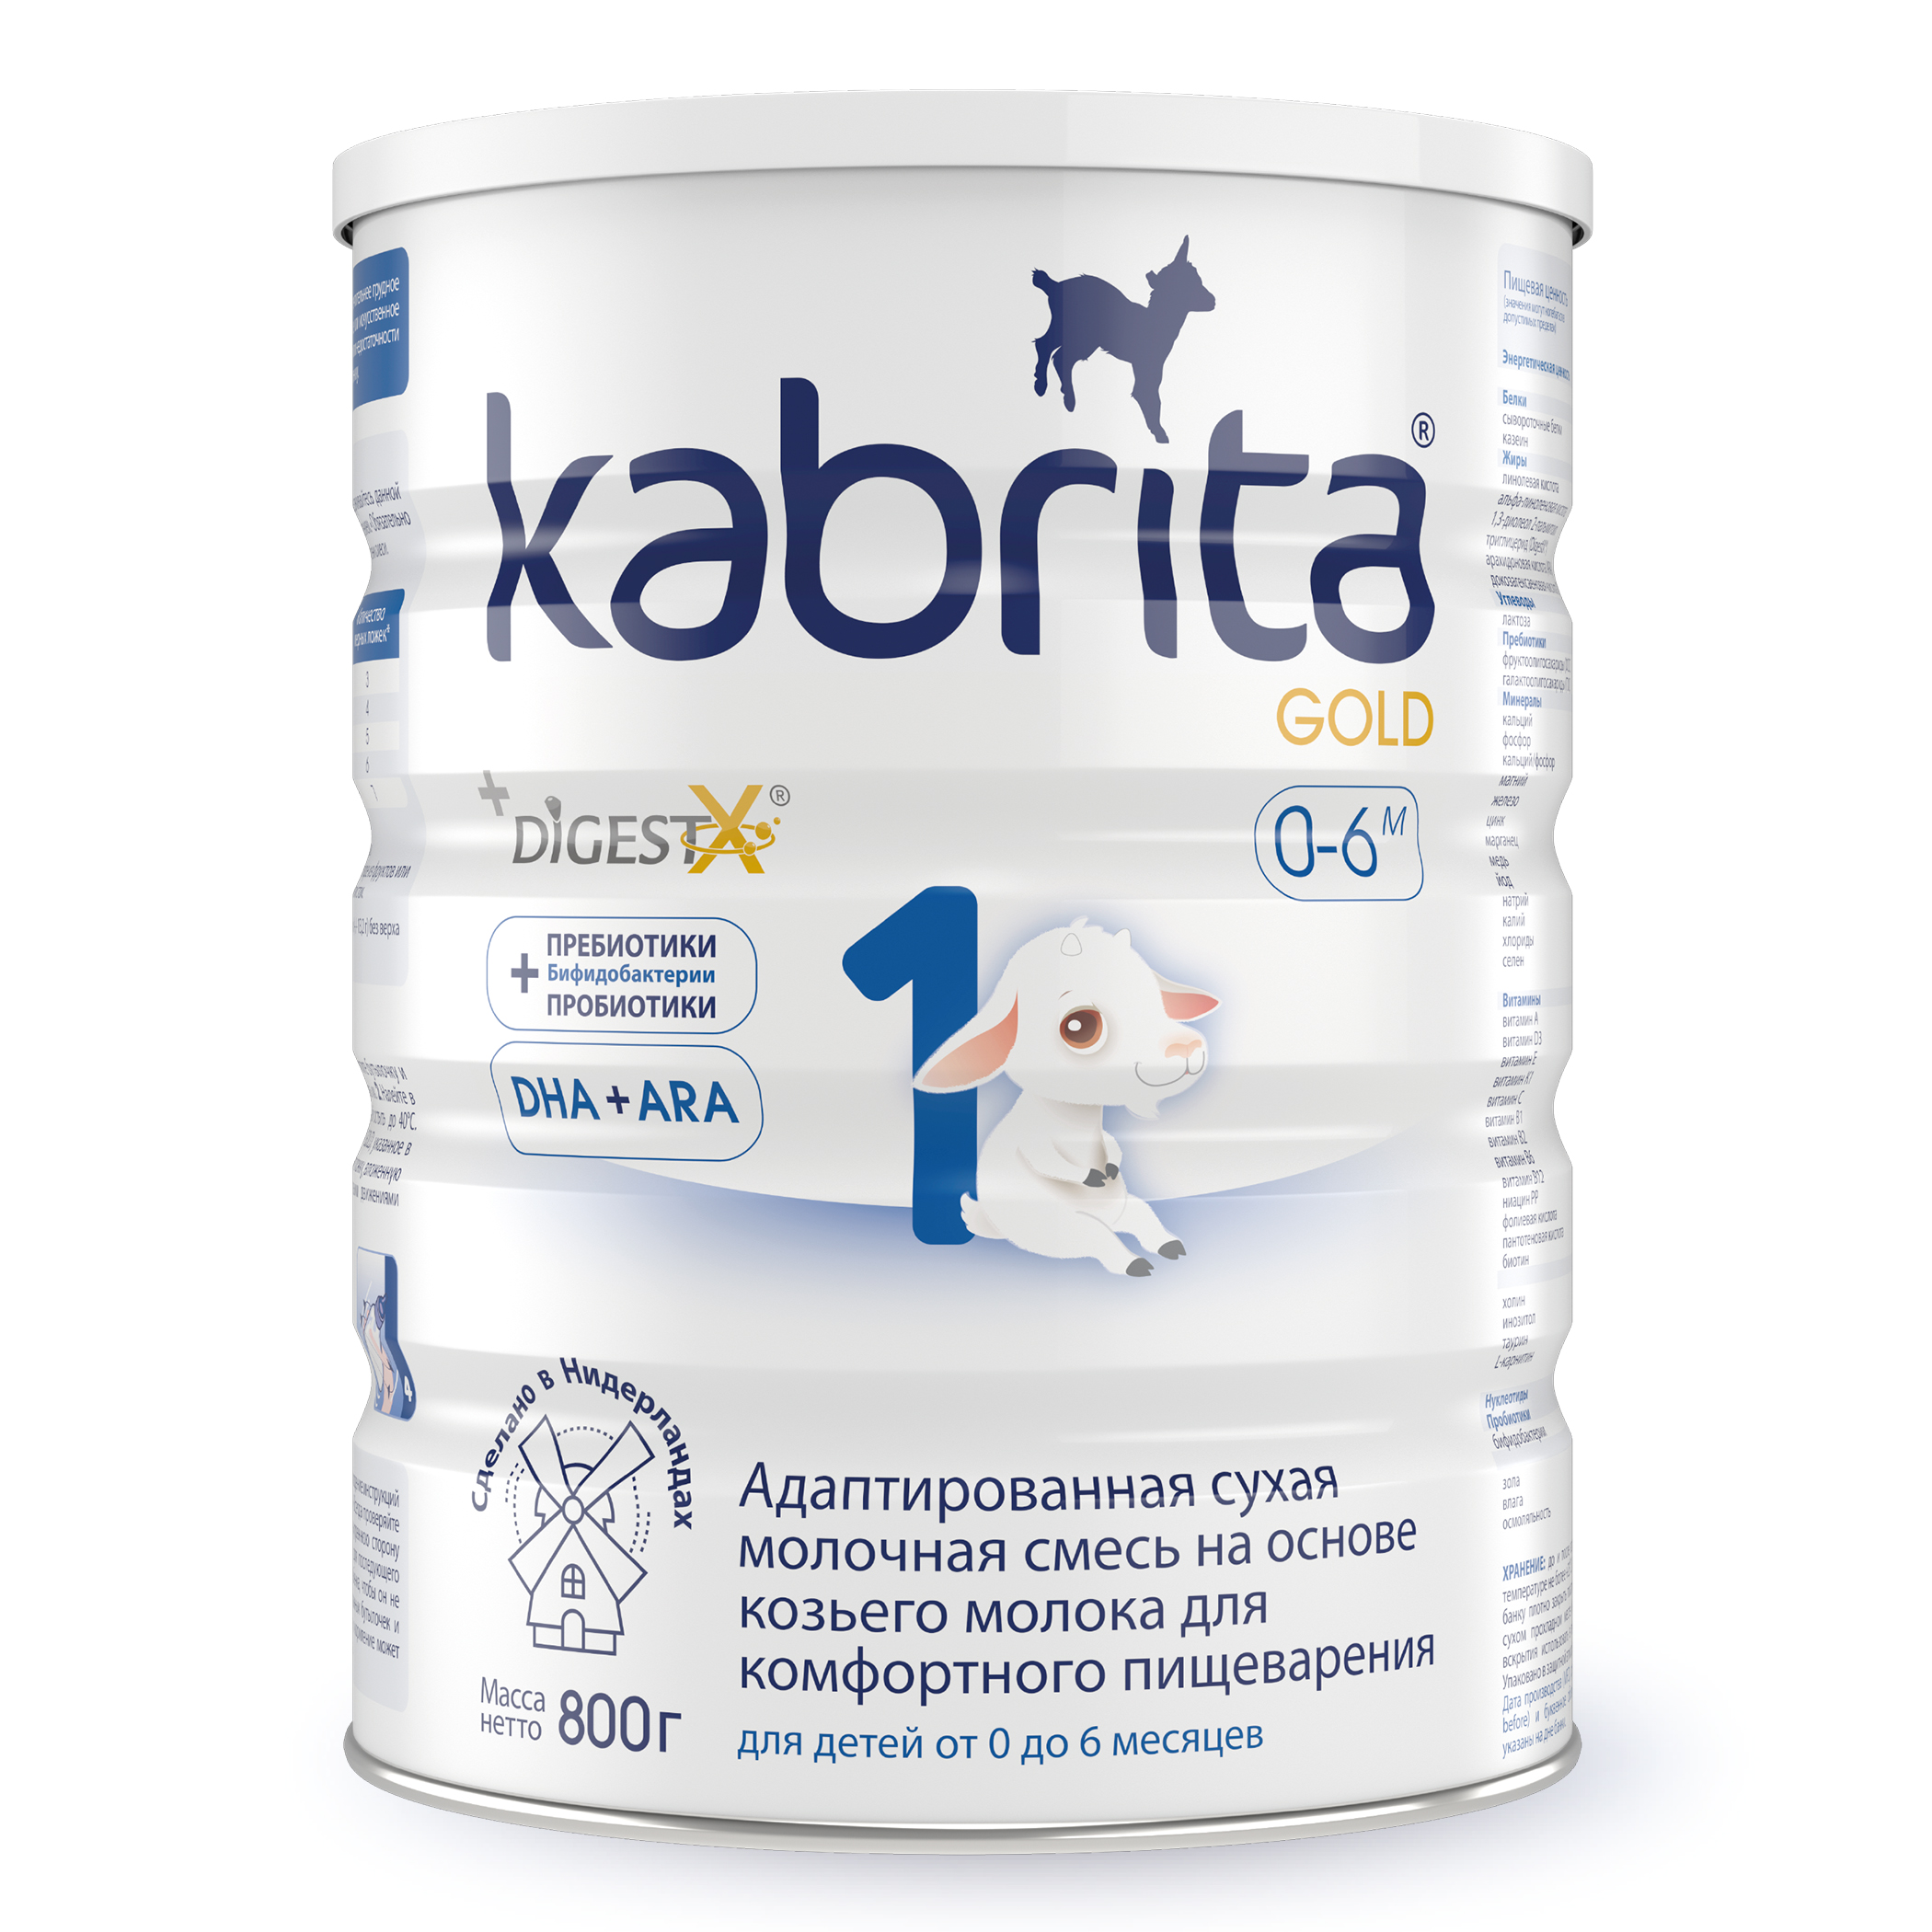 Смесь молочная Kabrita 1 Gold на козьем молоке для комфортного пищеварения, с 0м, 800 г